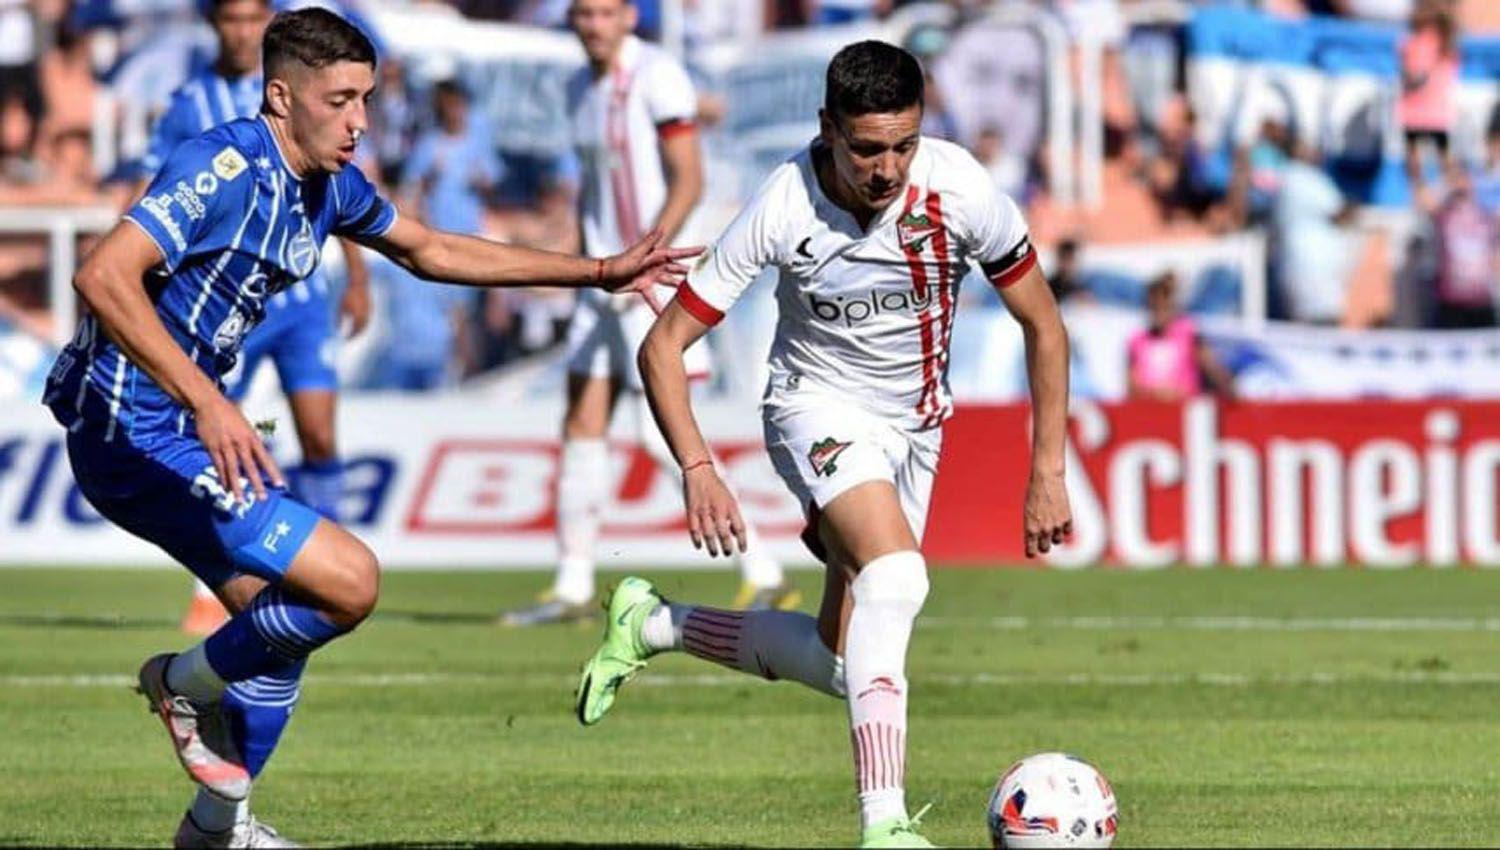 Lluvia de goles en el empate entre Godoy Cruz y Estudiantes